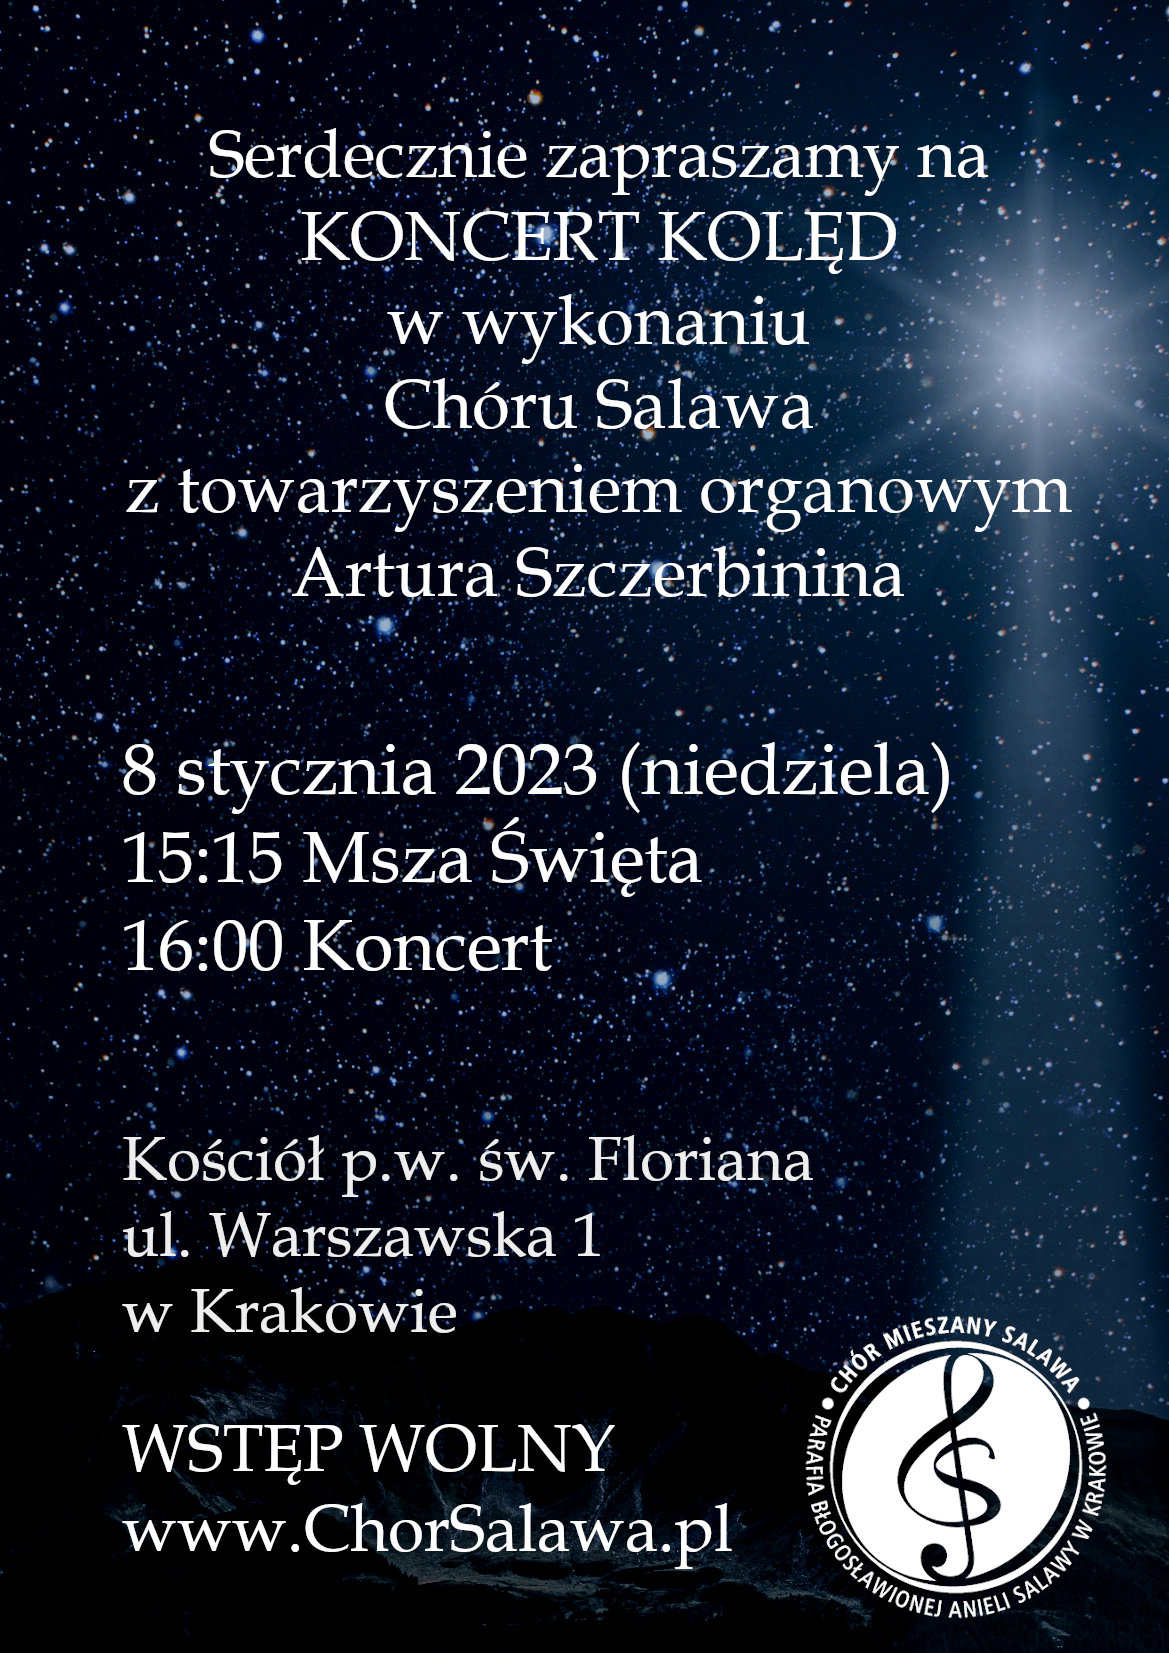 Koncert kolęd u św. Floriana 8 stycznia 2023 r.